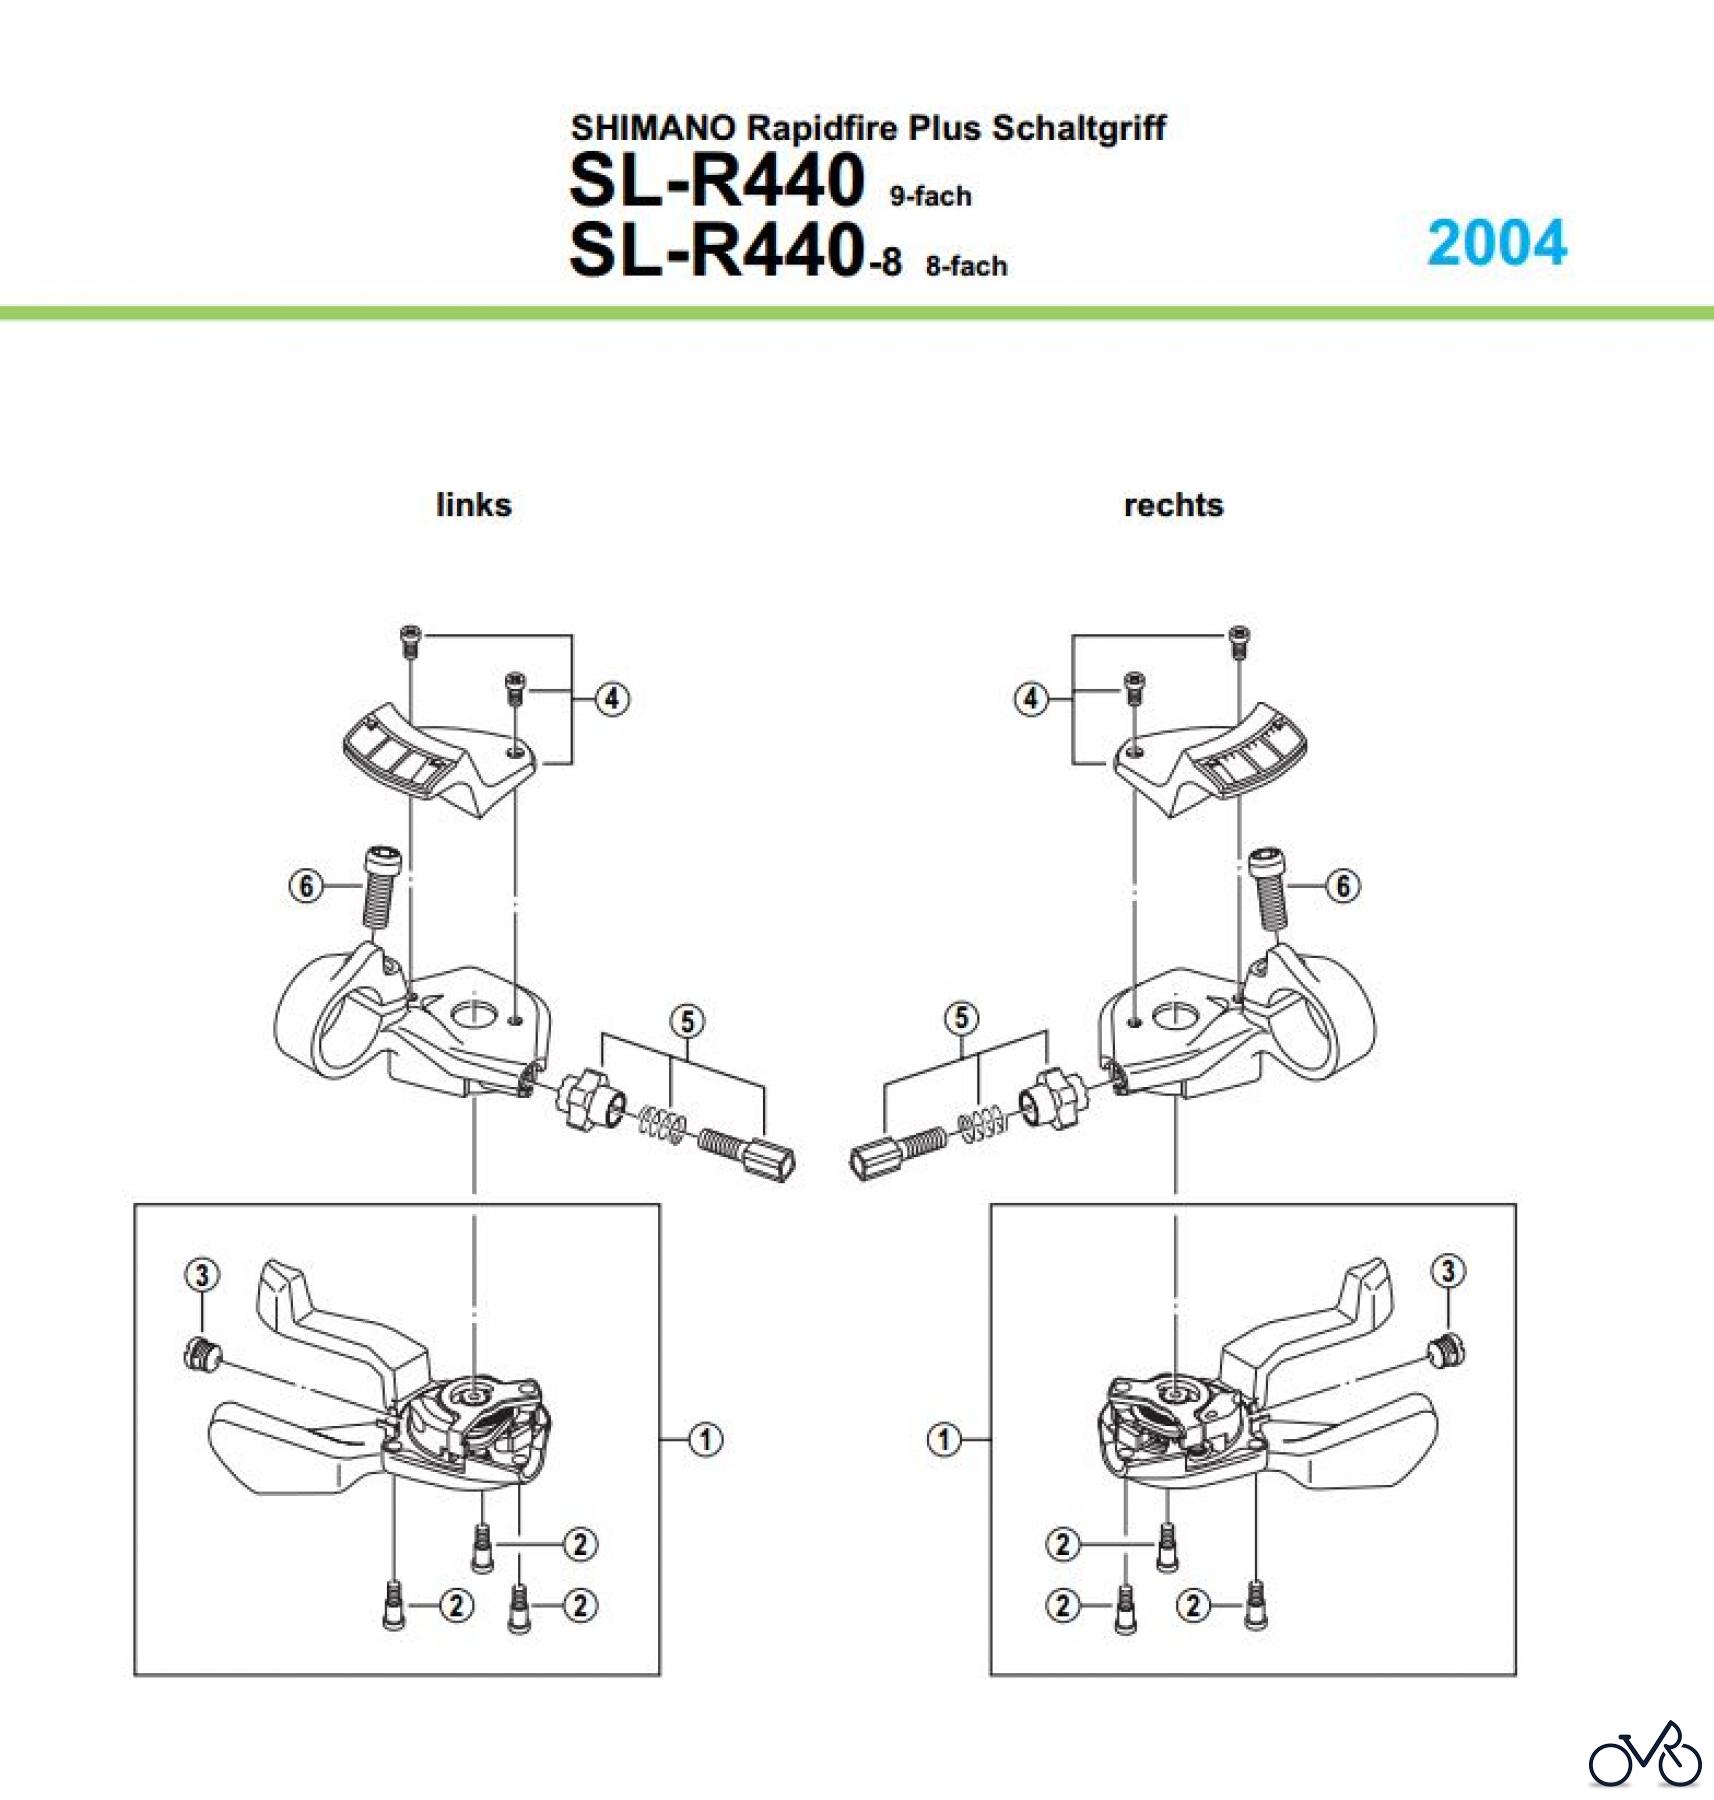  Shimano SL Shift Lever - Schalthebel SL-R440, 2004 SHIMANO Rapidfire Plus Schaltgriff